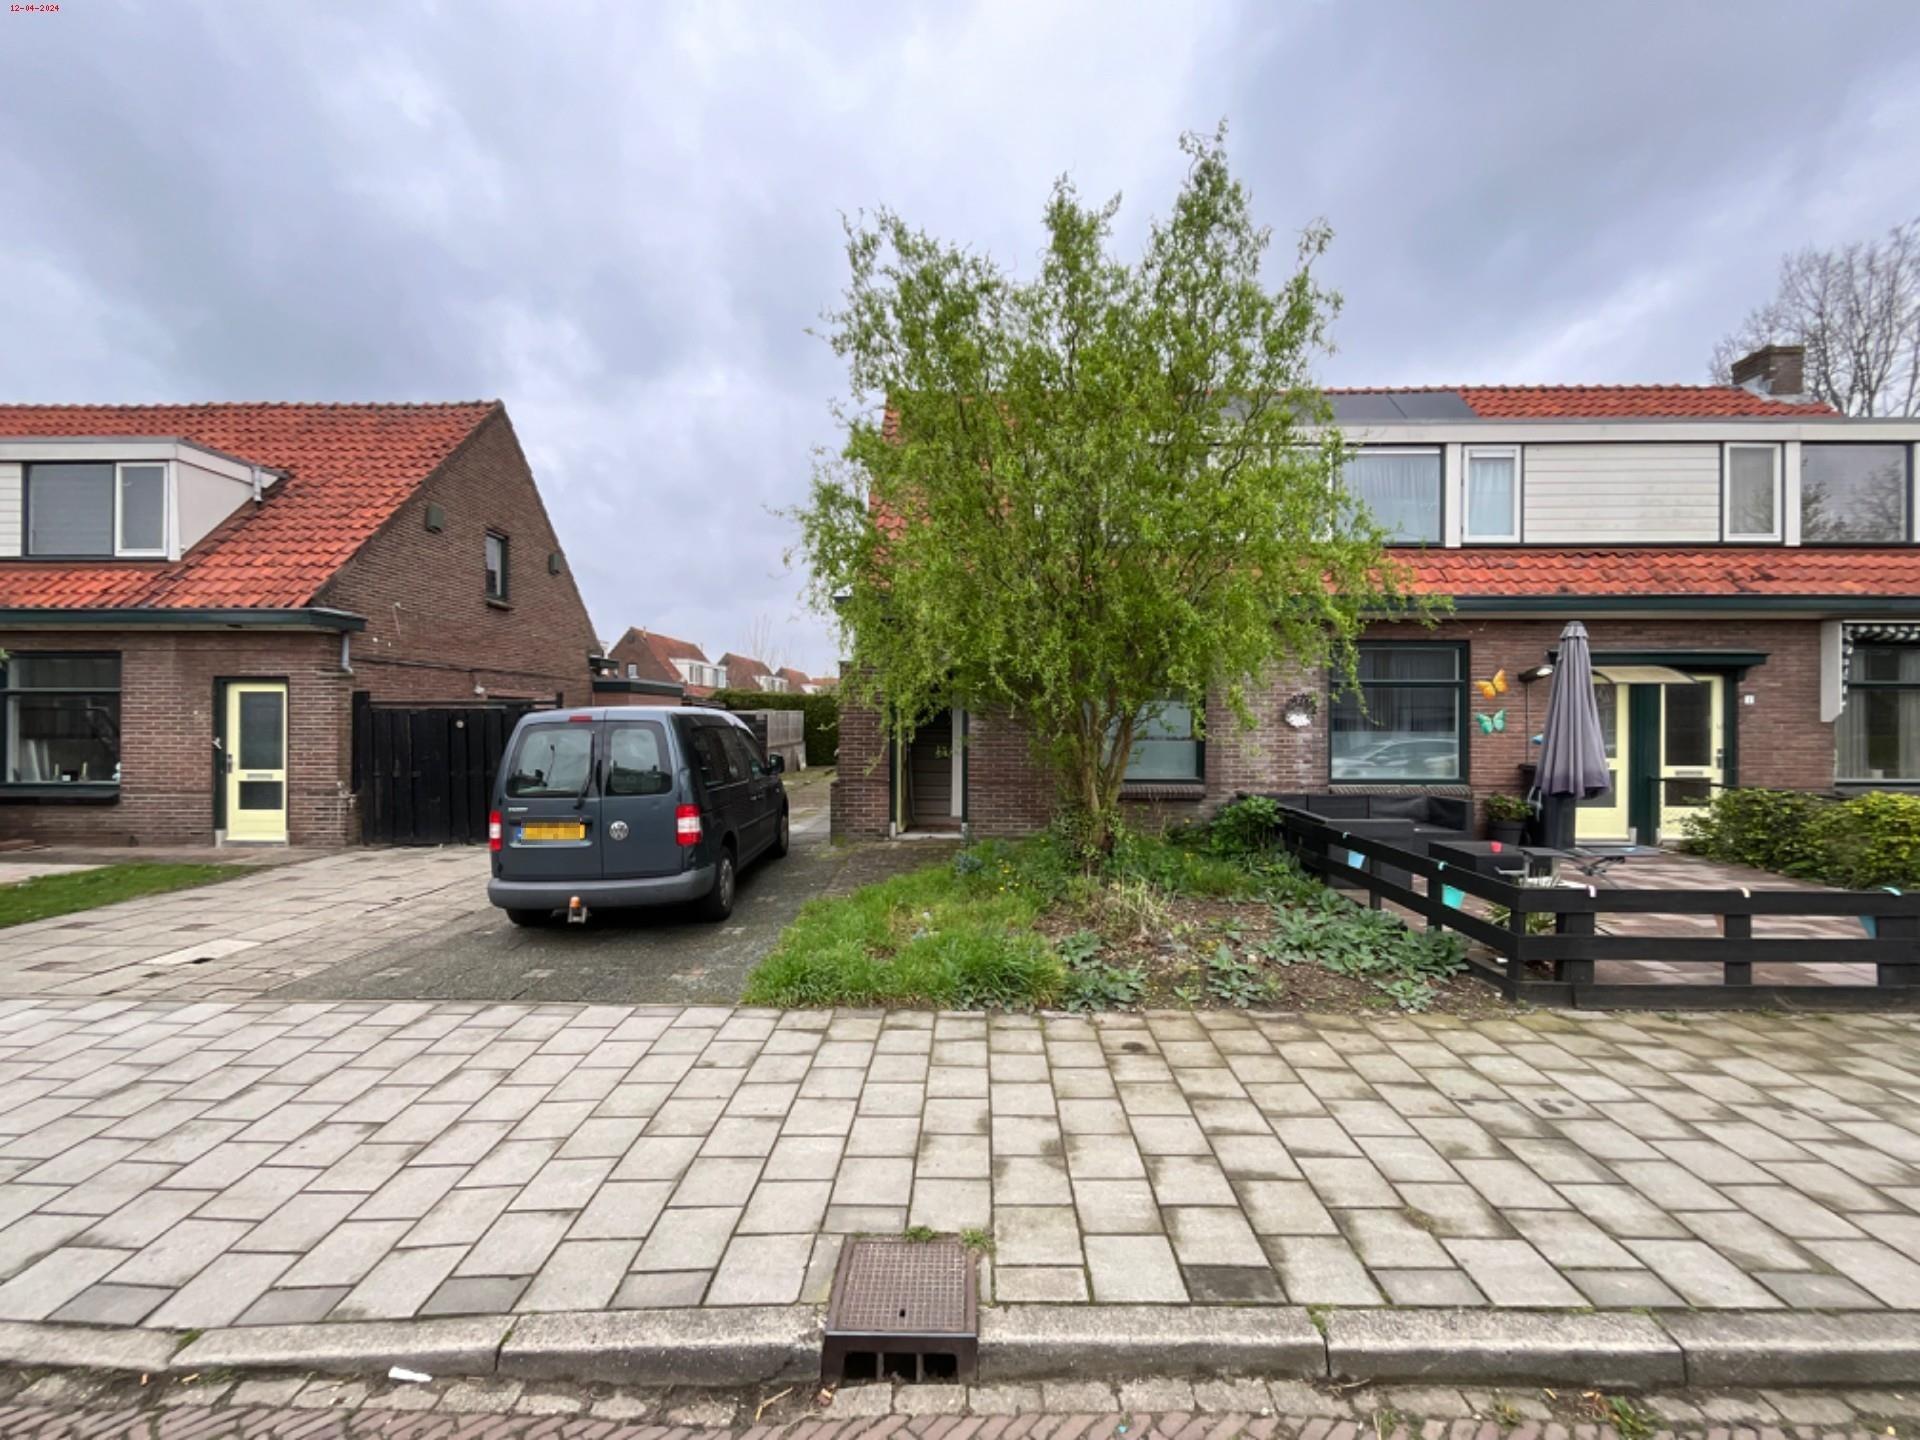 Johan van Meeckerenstraat 6, 6991 XR Rheden, Nederland